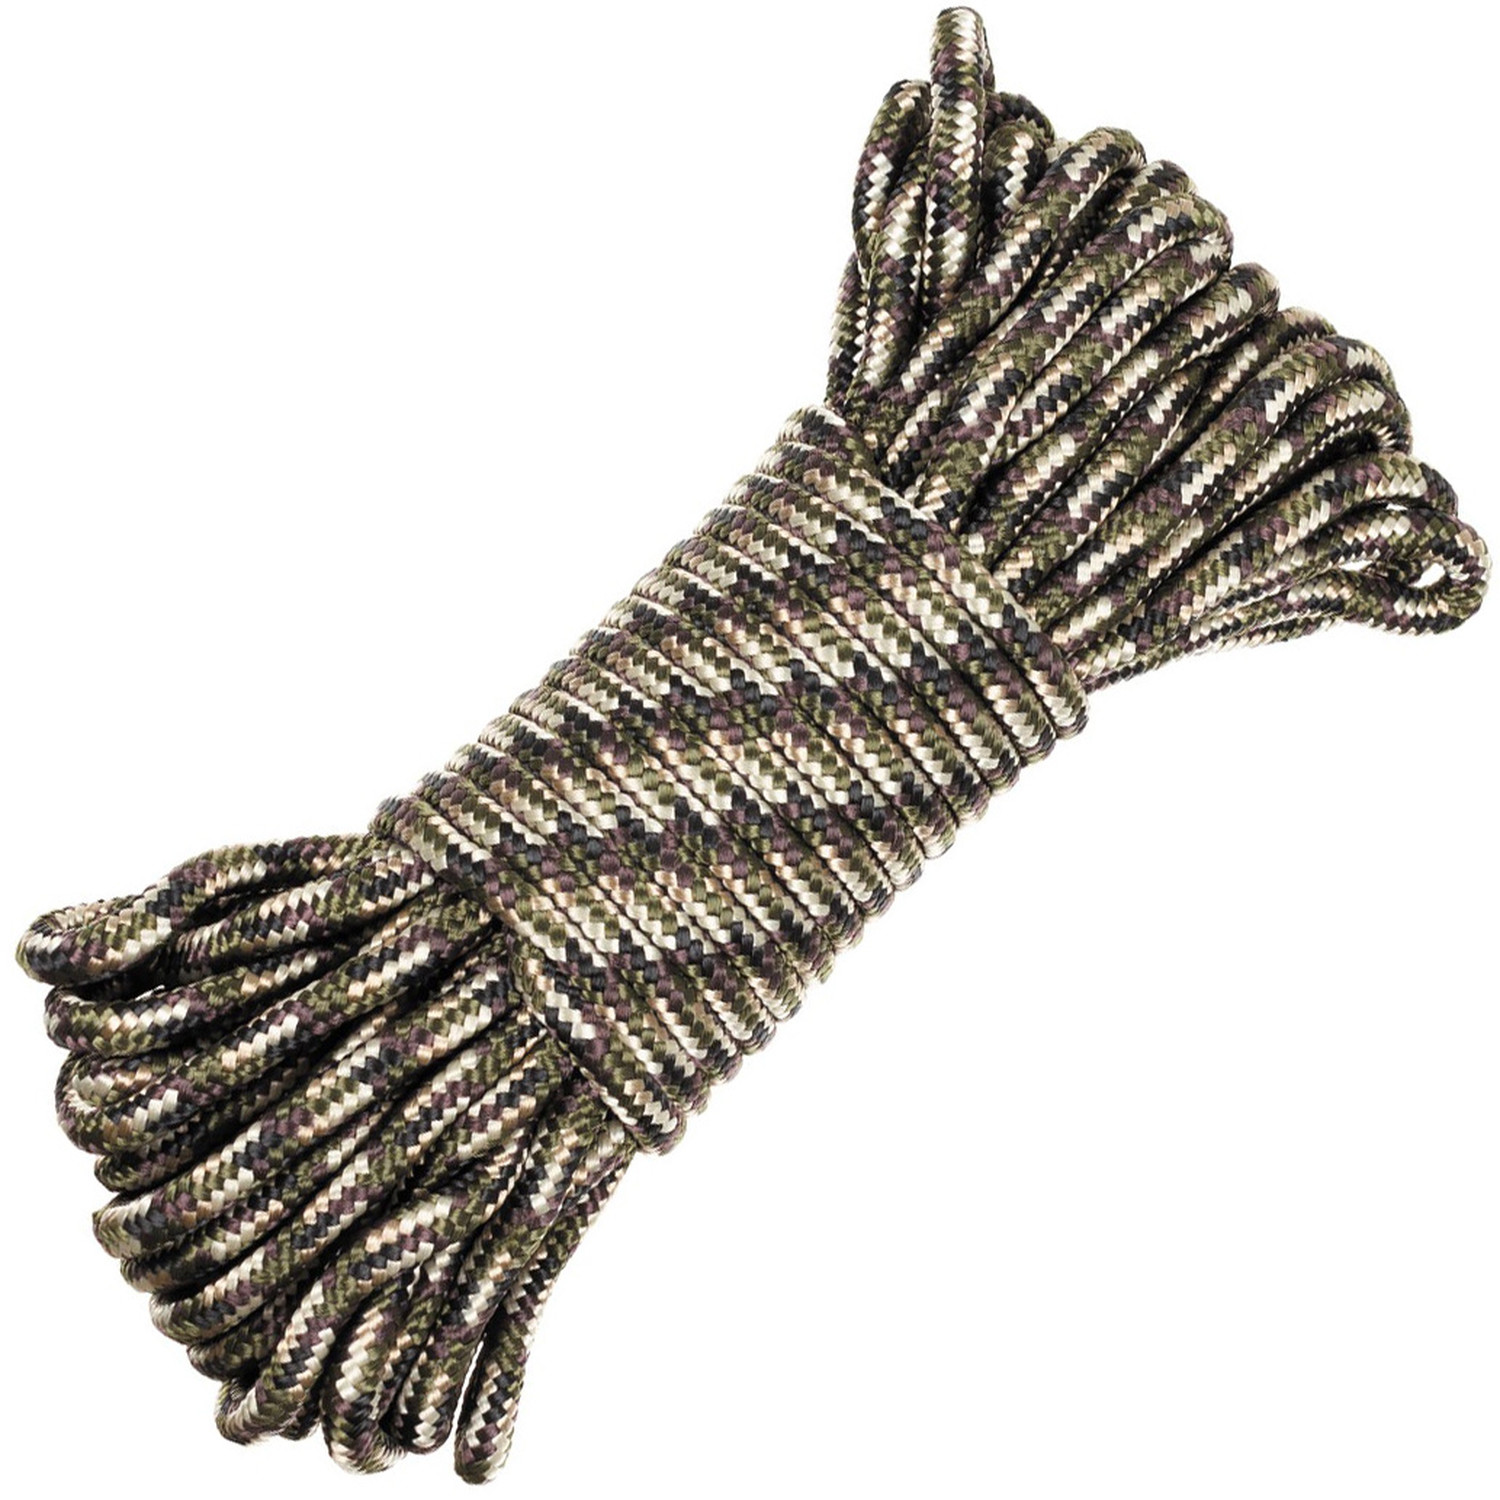 Seil in Tarnfarben (Camo) mit Durchmesser 5 mm, 15 m lang